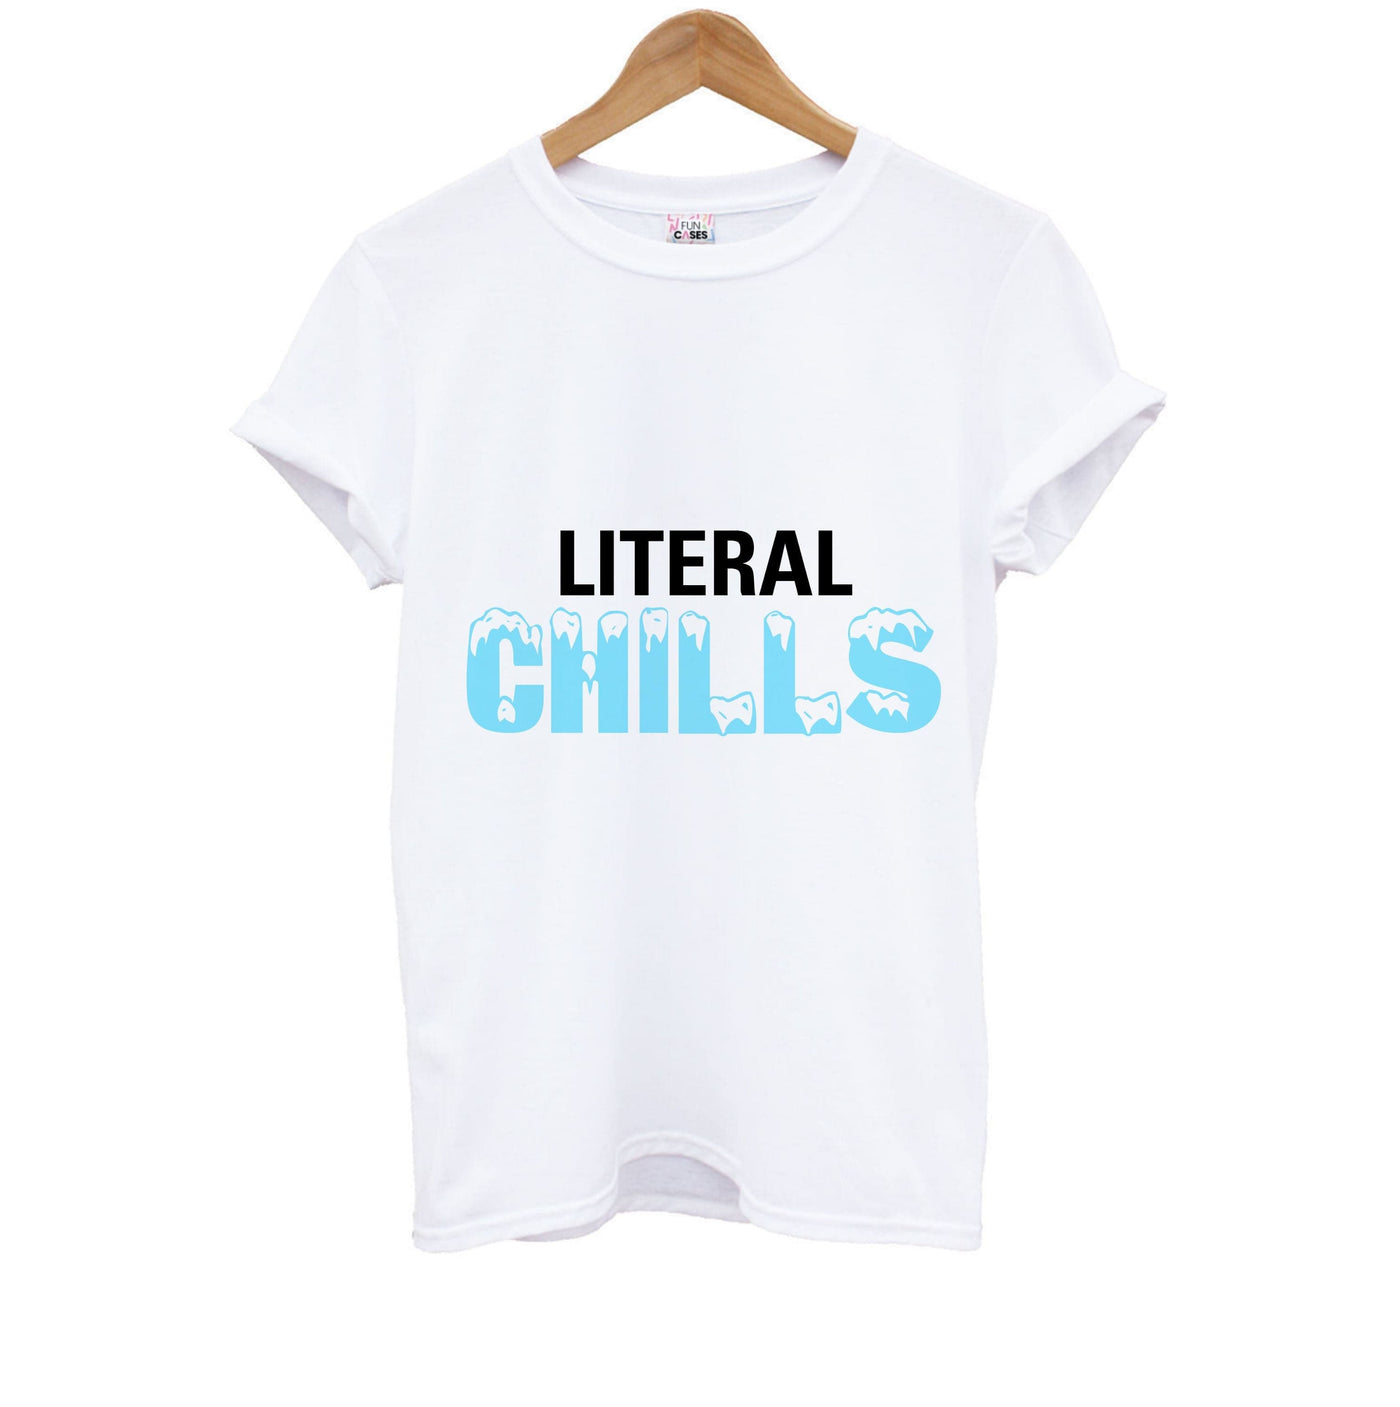 Literal Chills - Brooklyn Nine-Nine Kids T-Shirt